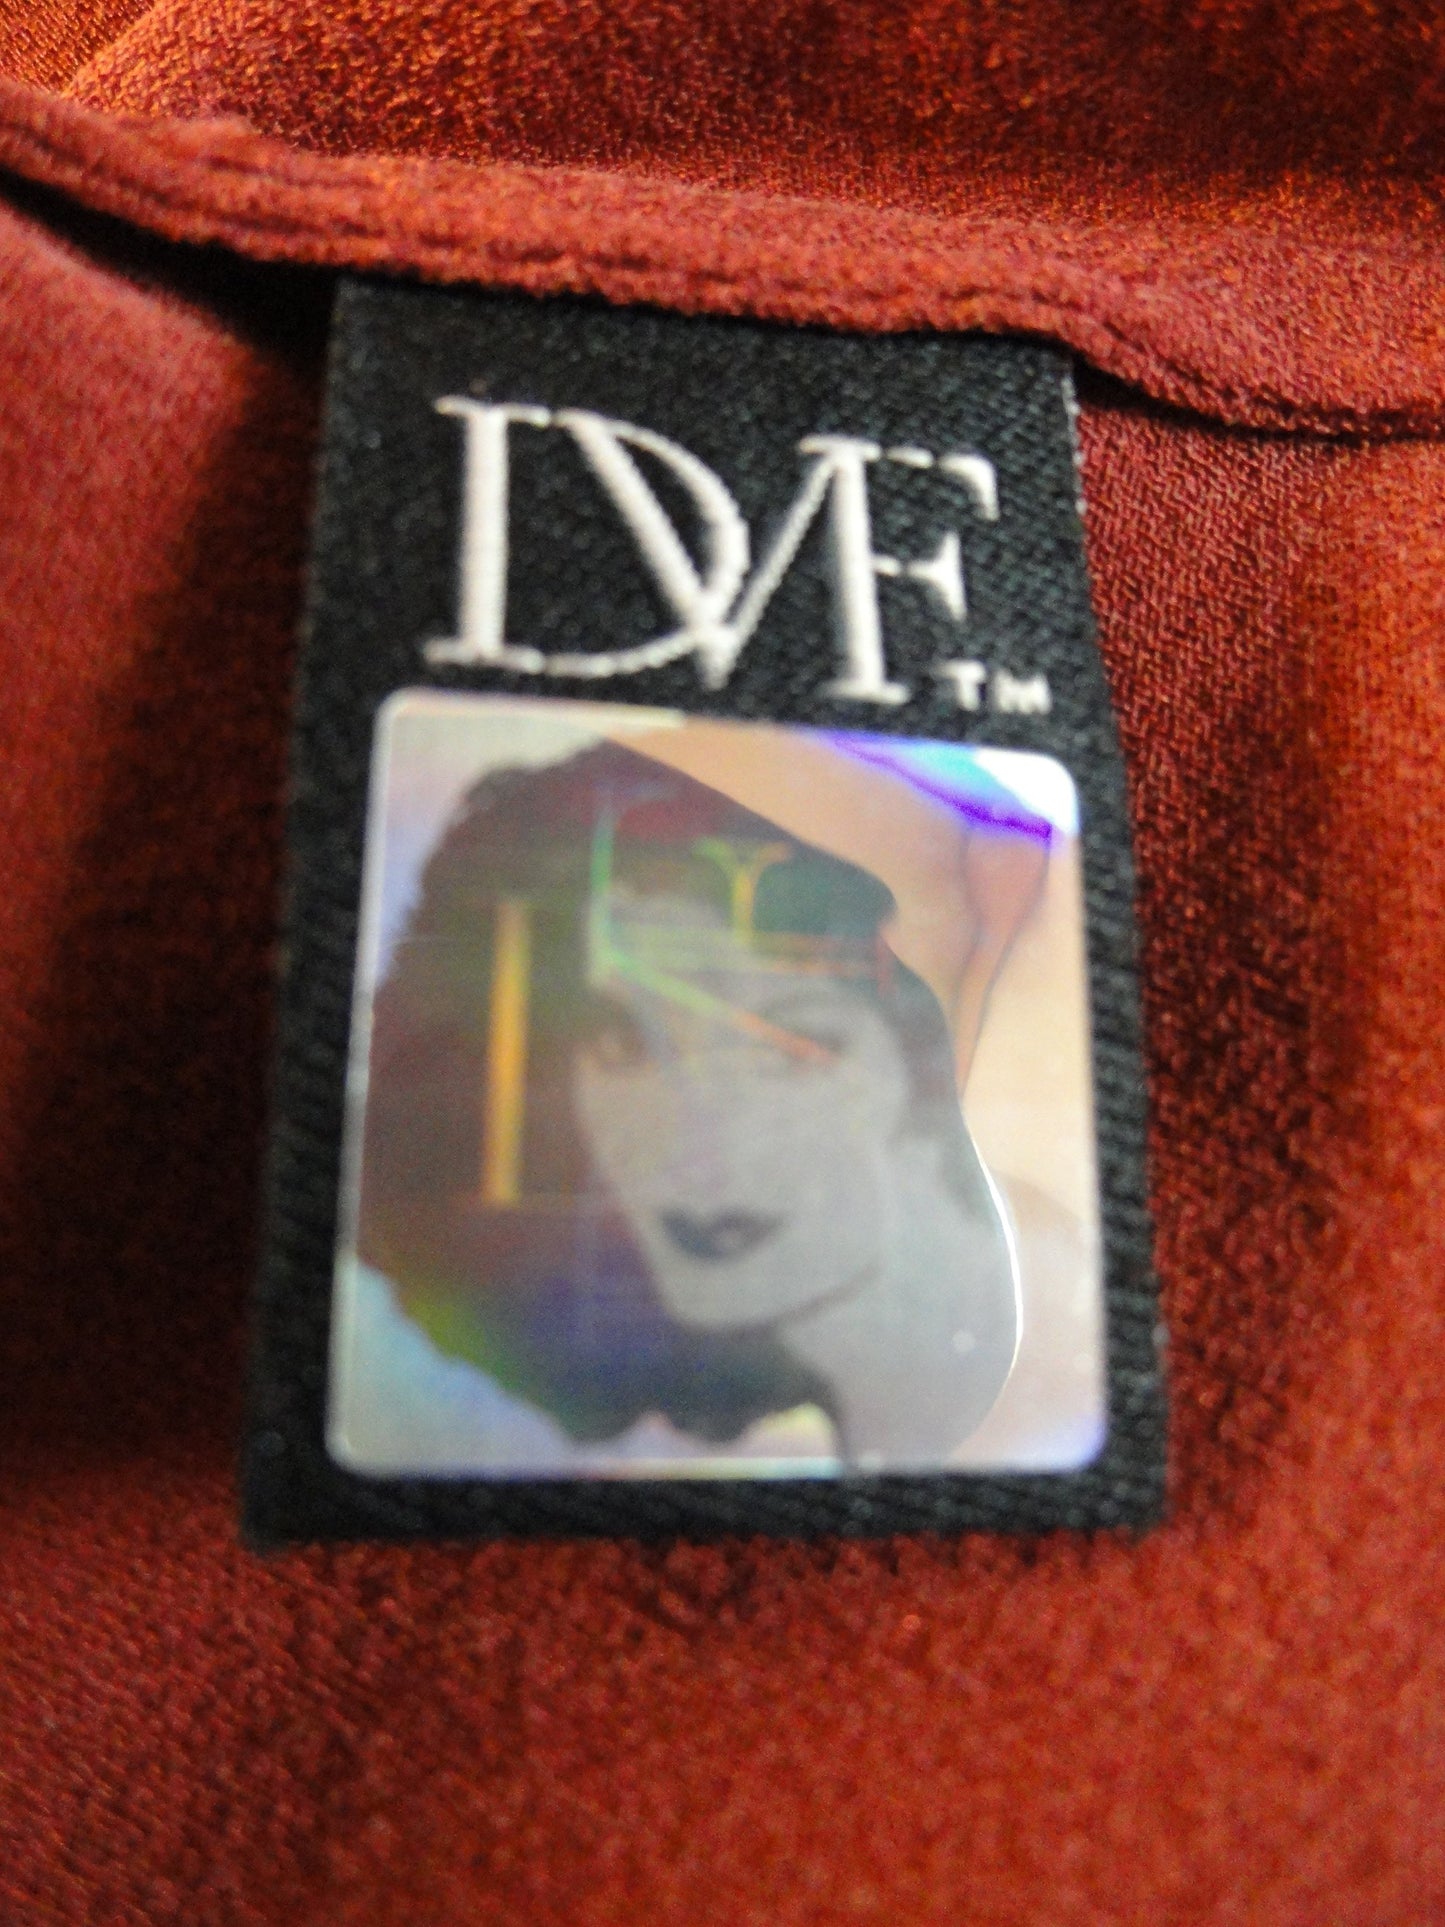 Diane Von Furstenberg Dress Chili Sz S (SKU 000003)